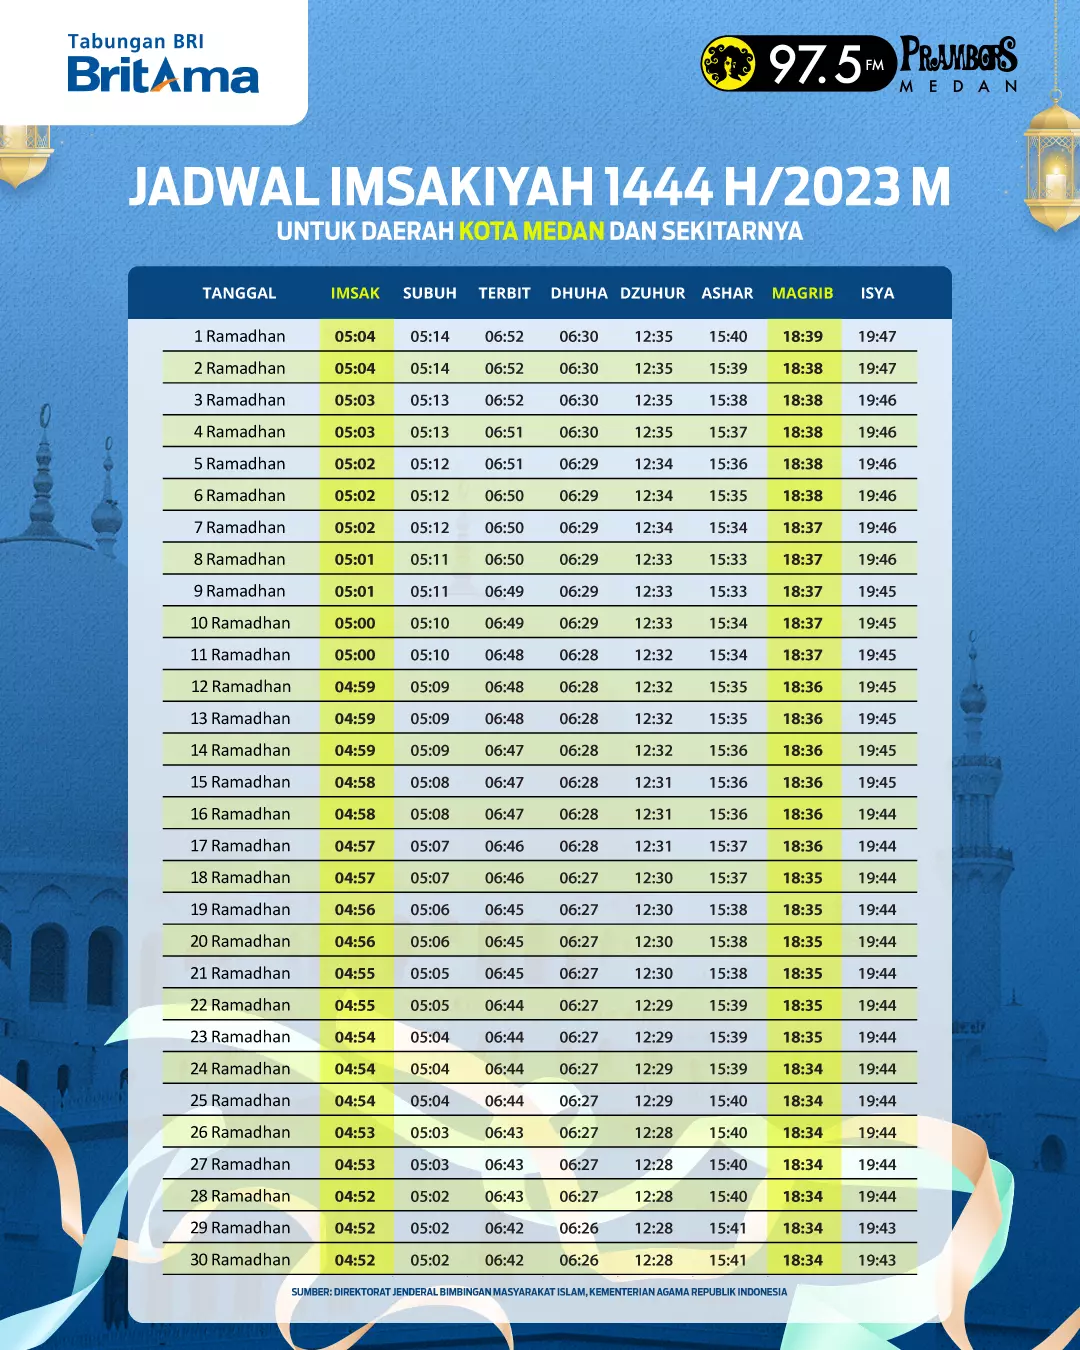 Jadwal Imsakiyah Medan - Bank BRI